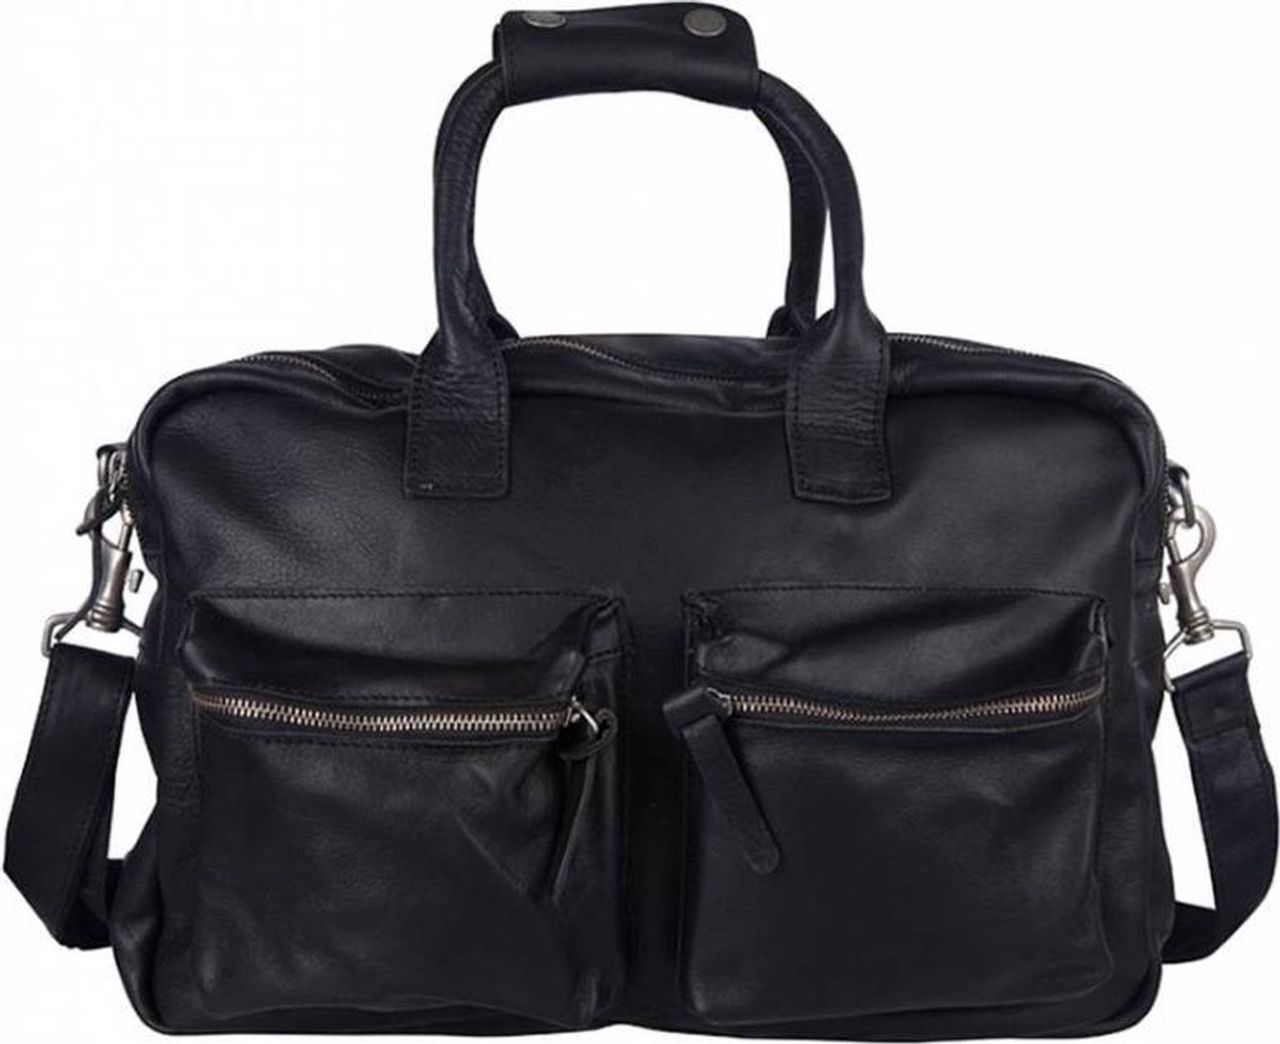 Cowboysbag - Handtassen - The Bag Special - Black